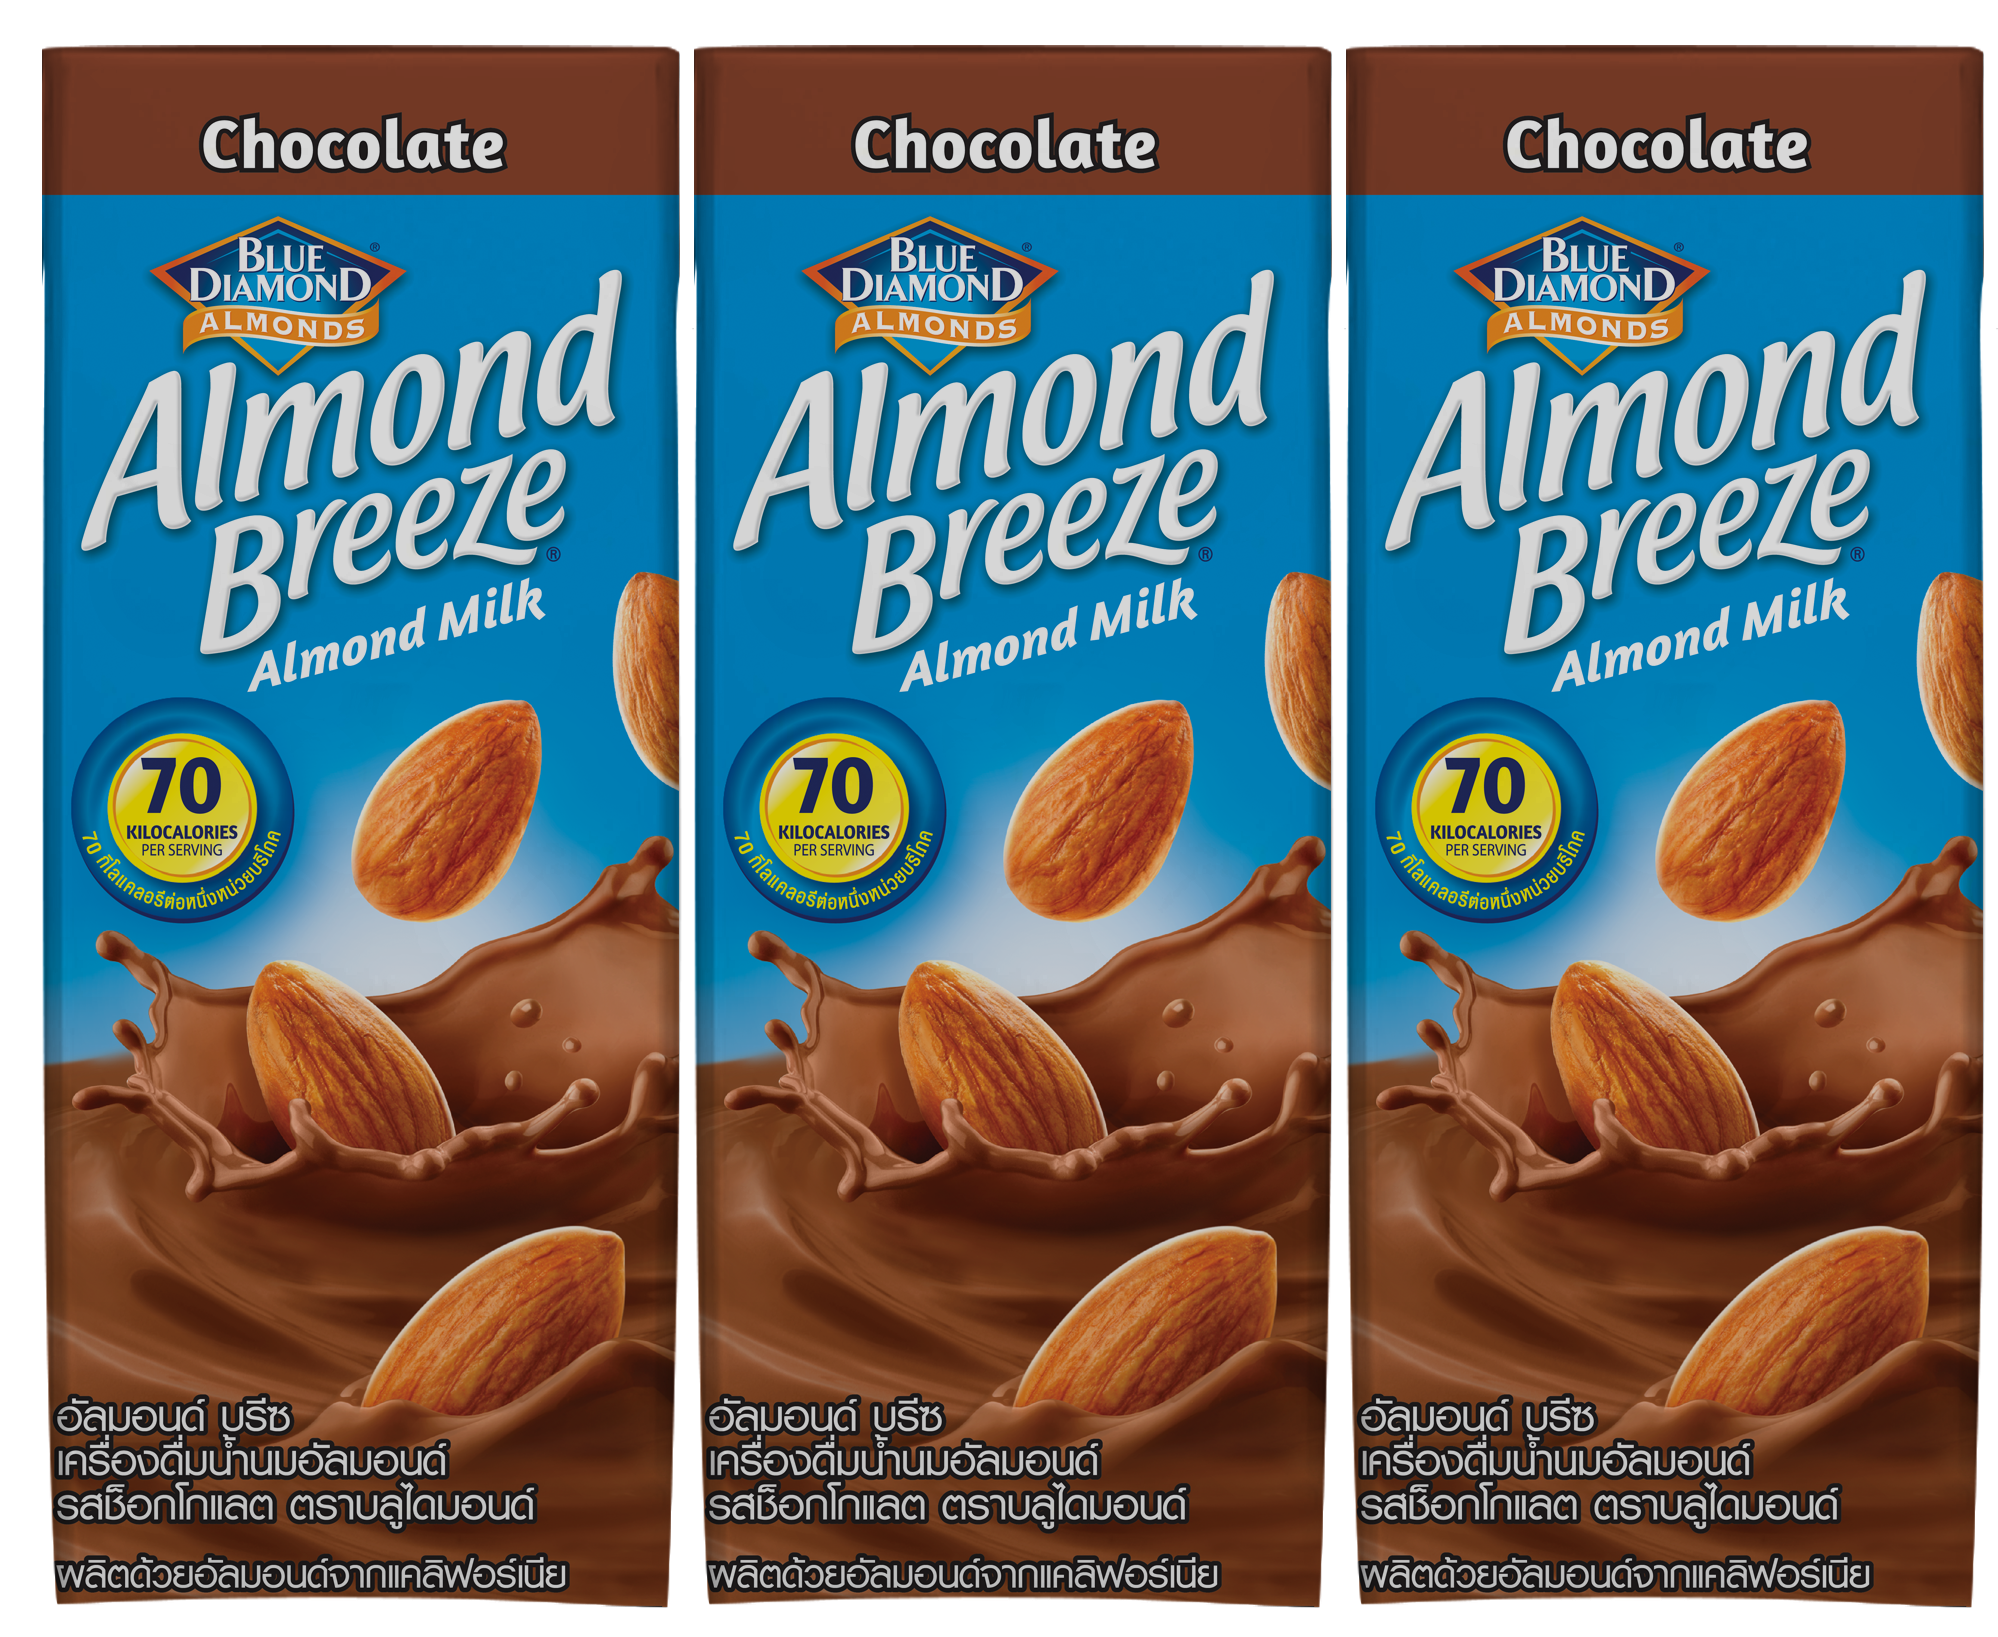 Thùng Sữa Hạt Hạnh Nhân ALMOND BREEZE CHOCOLATE 180ml - Sản phẩm của TẬP ĐOÀN BLUE DIAMOND MỸ - Đứng đầu về sản lượng tiêu thụ tại Mỹ